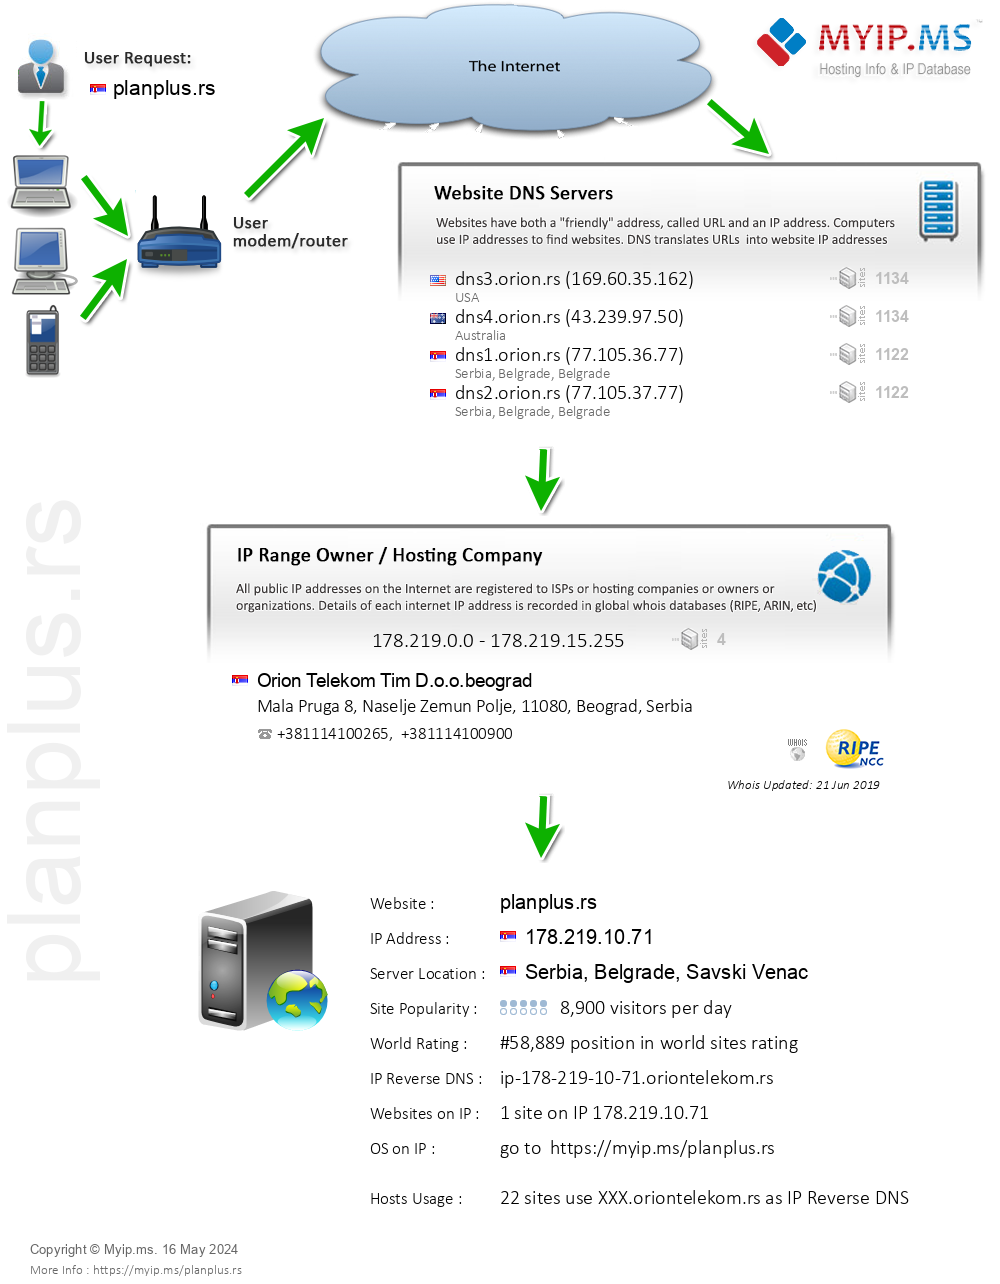 Planplus.rs - Website Hosting Visual IP Diagram